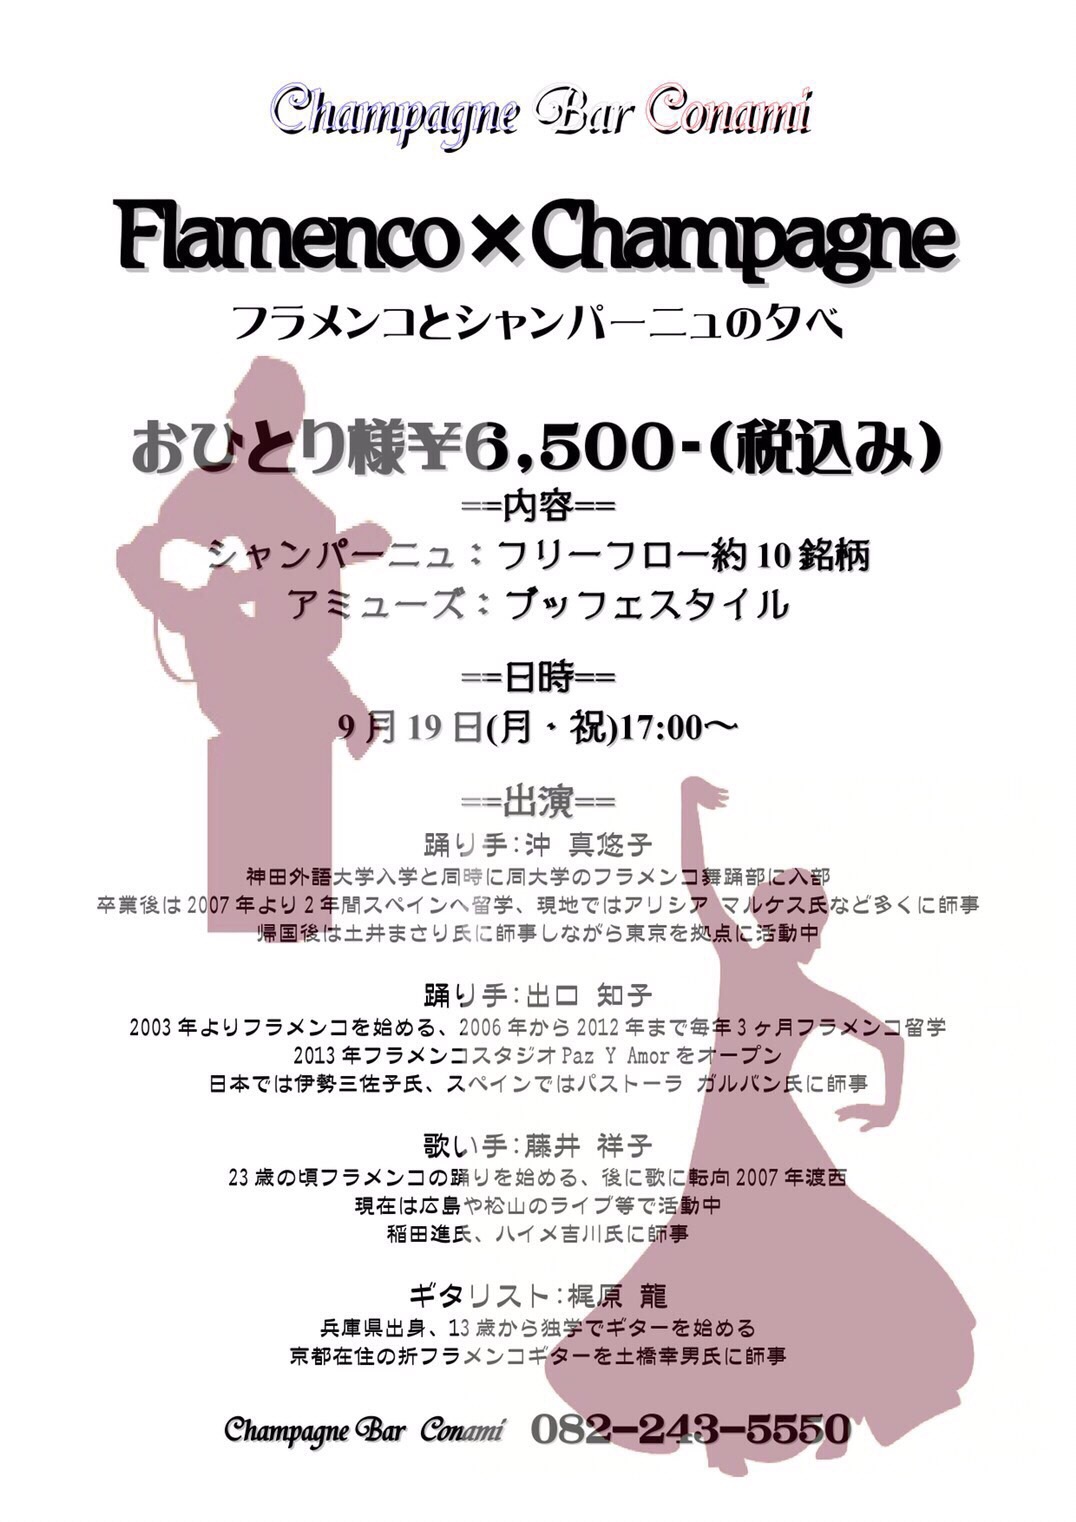 広告：2016年9月19日(月)　Flamenco×Champagne
フラメンコとシャンパーニュの夕べ